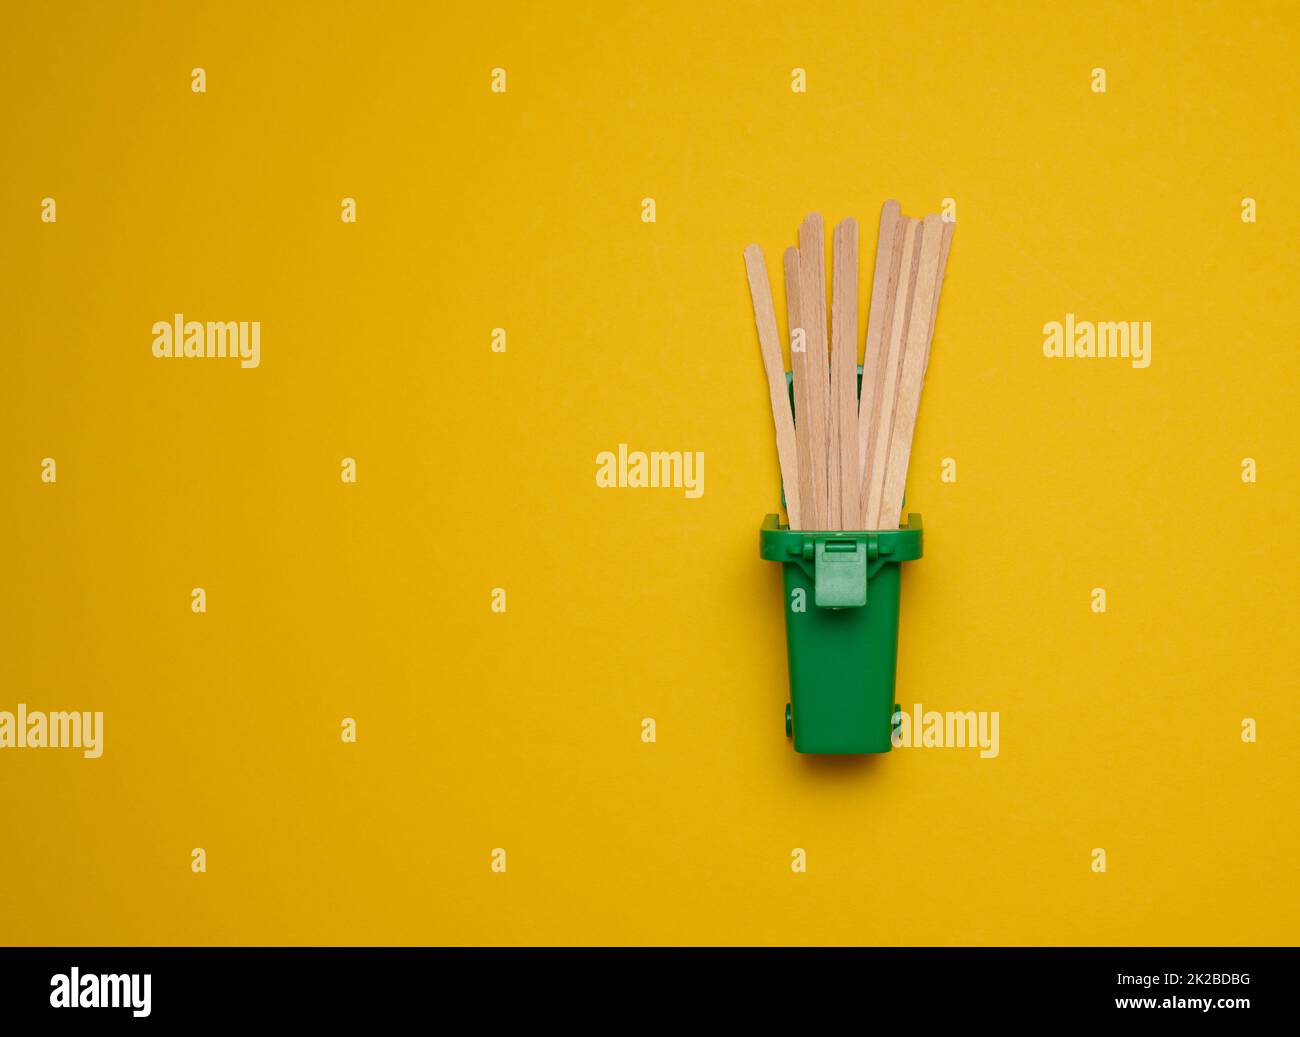 Einweg-Holzstäbchen zum Rühren von heißen Getränken auf gelbem Hintergrund. Kaffee- und Teelöffel Stockfoto